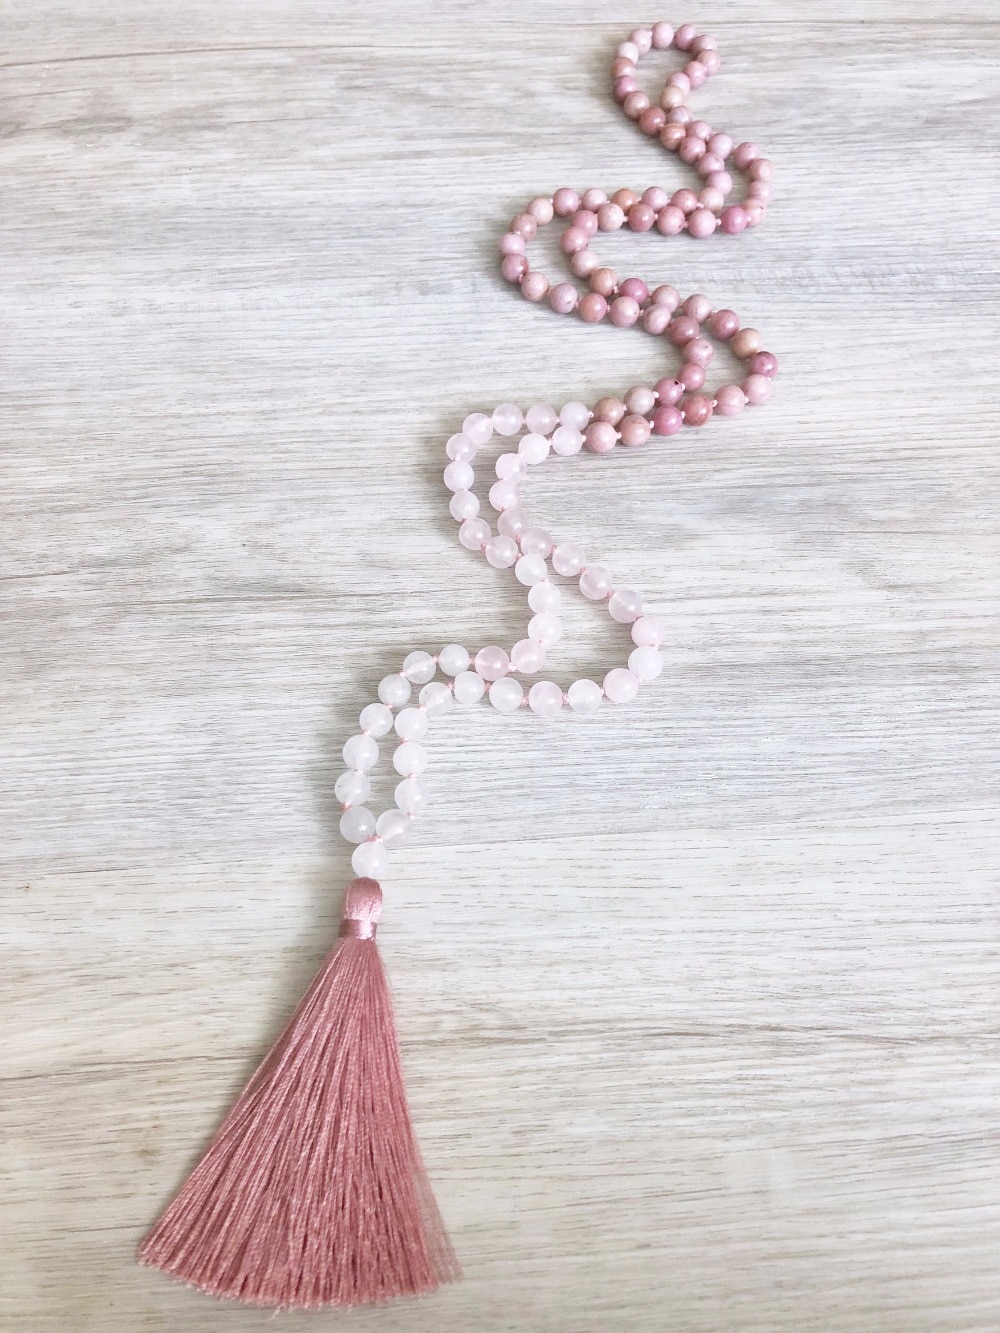 Mālā  108 perles « Karuṇā » en Rhodonite, Quartz rose et Jaspe blanc- 8 mm